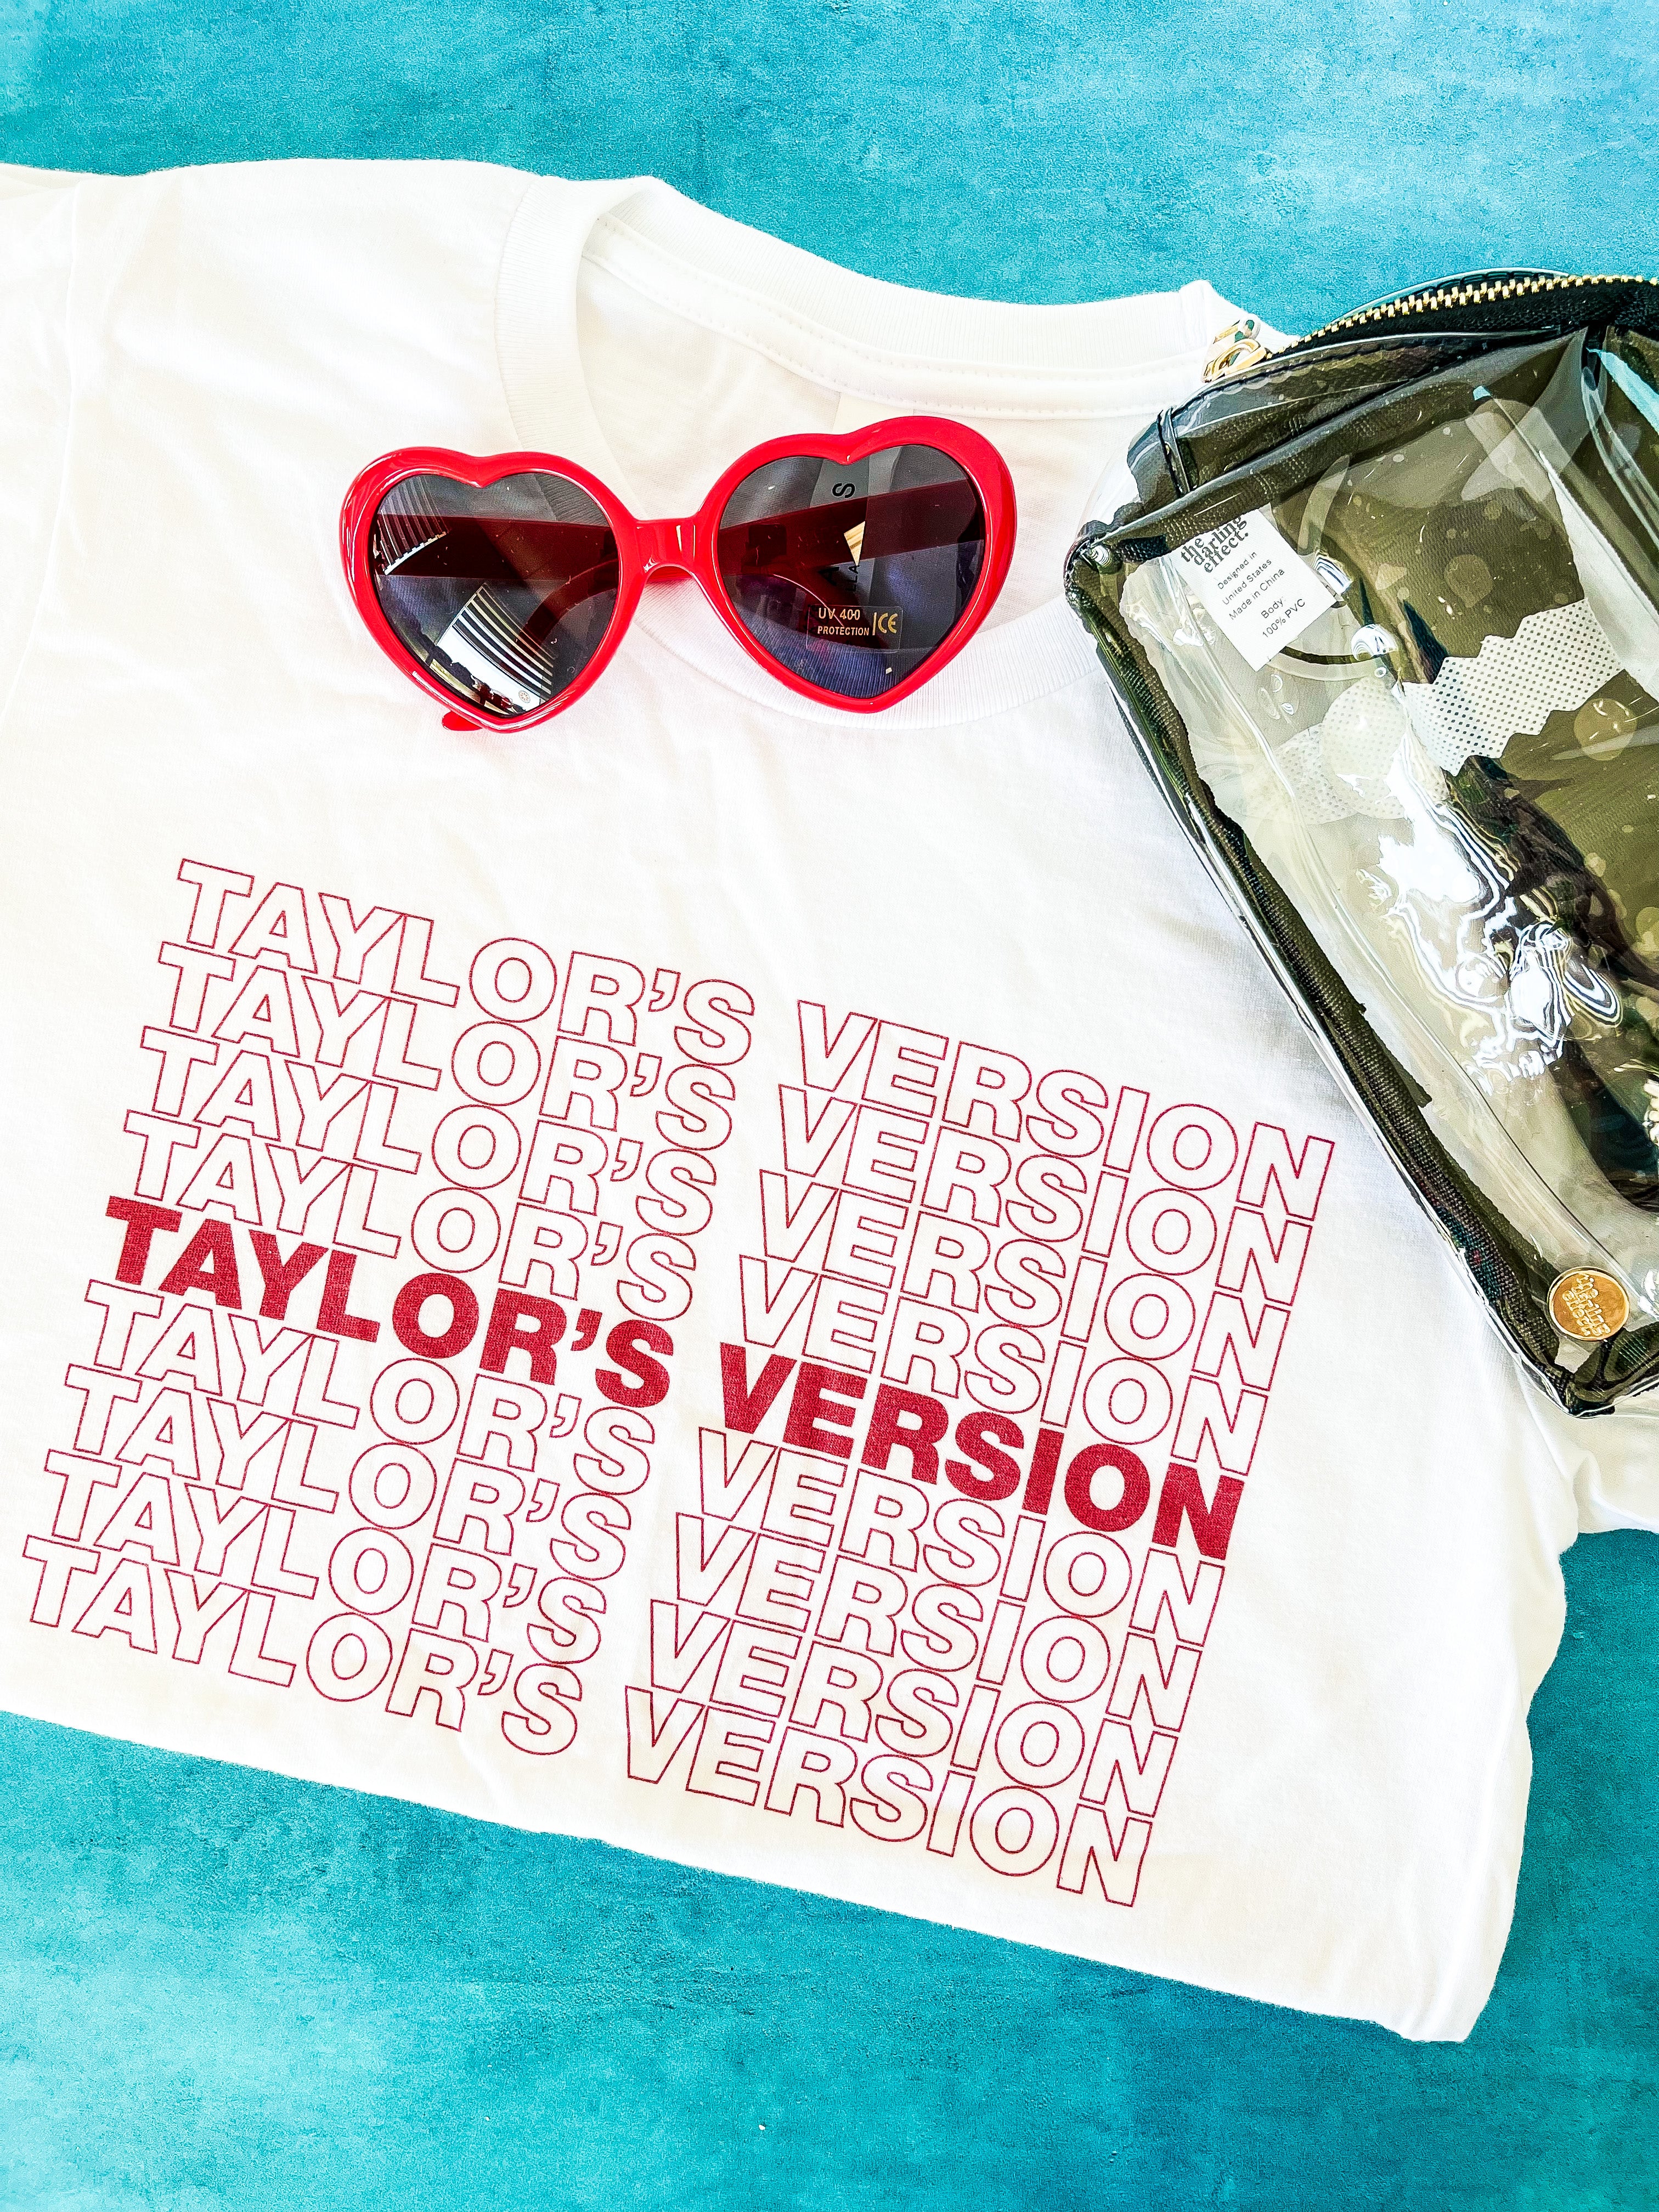 SALE! Taylor's Version - Pop Culture Swifty T-Shirt For Eras Tour